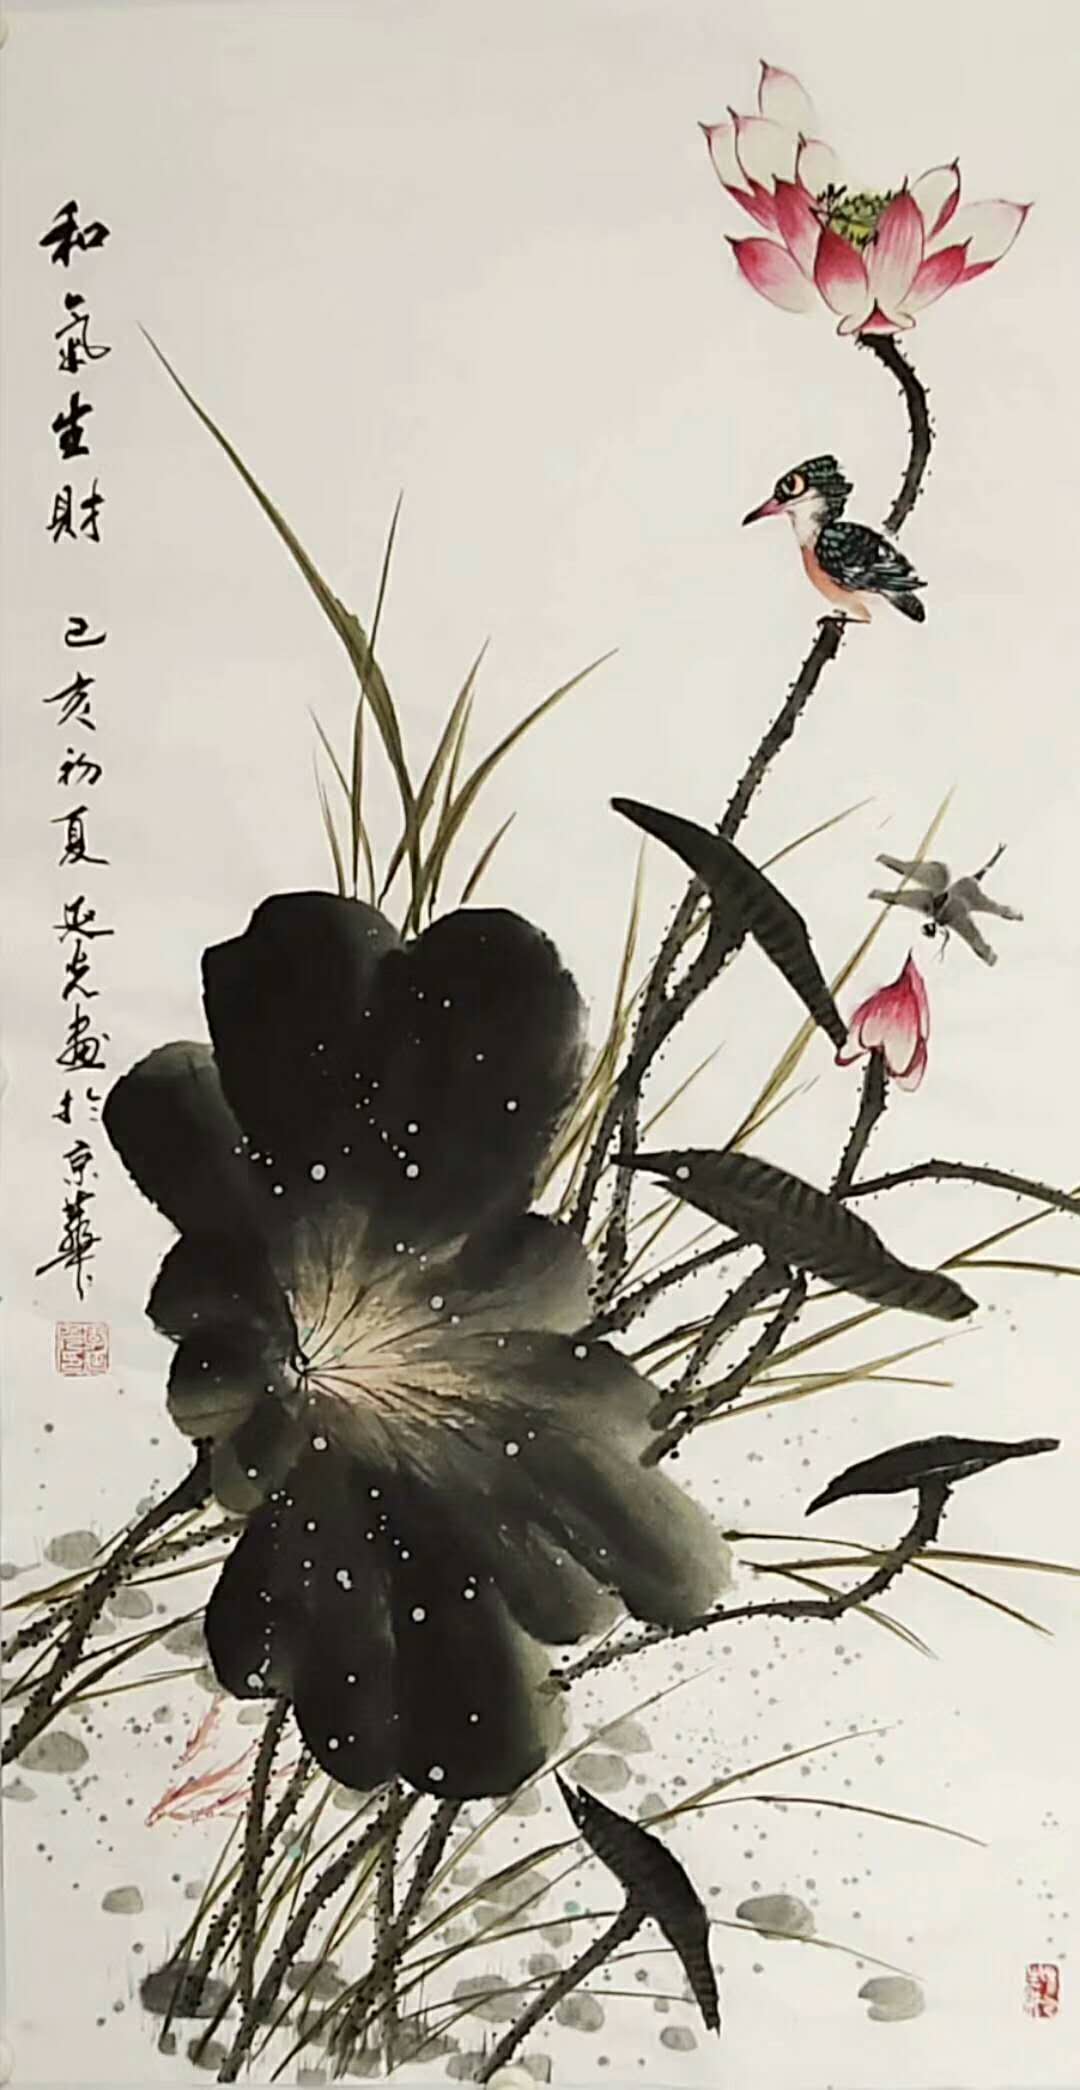 在2014年首届"绿画中国"tcv电视书画大赛中,作品荷花爱莲说被评为金奖